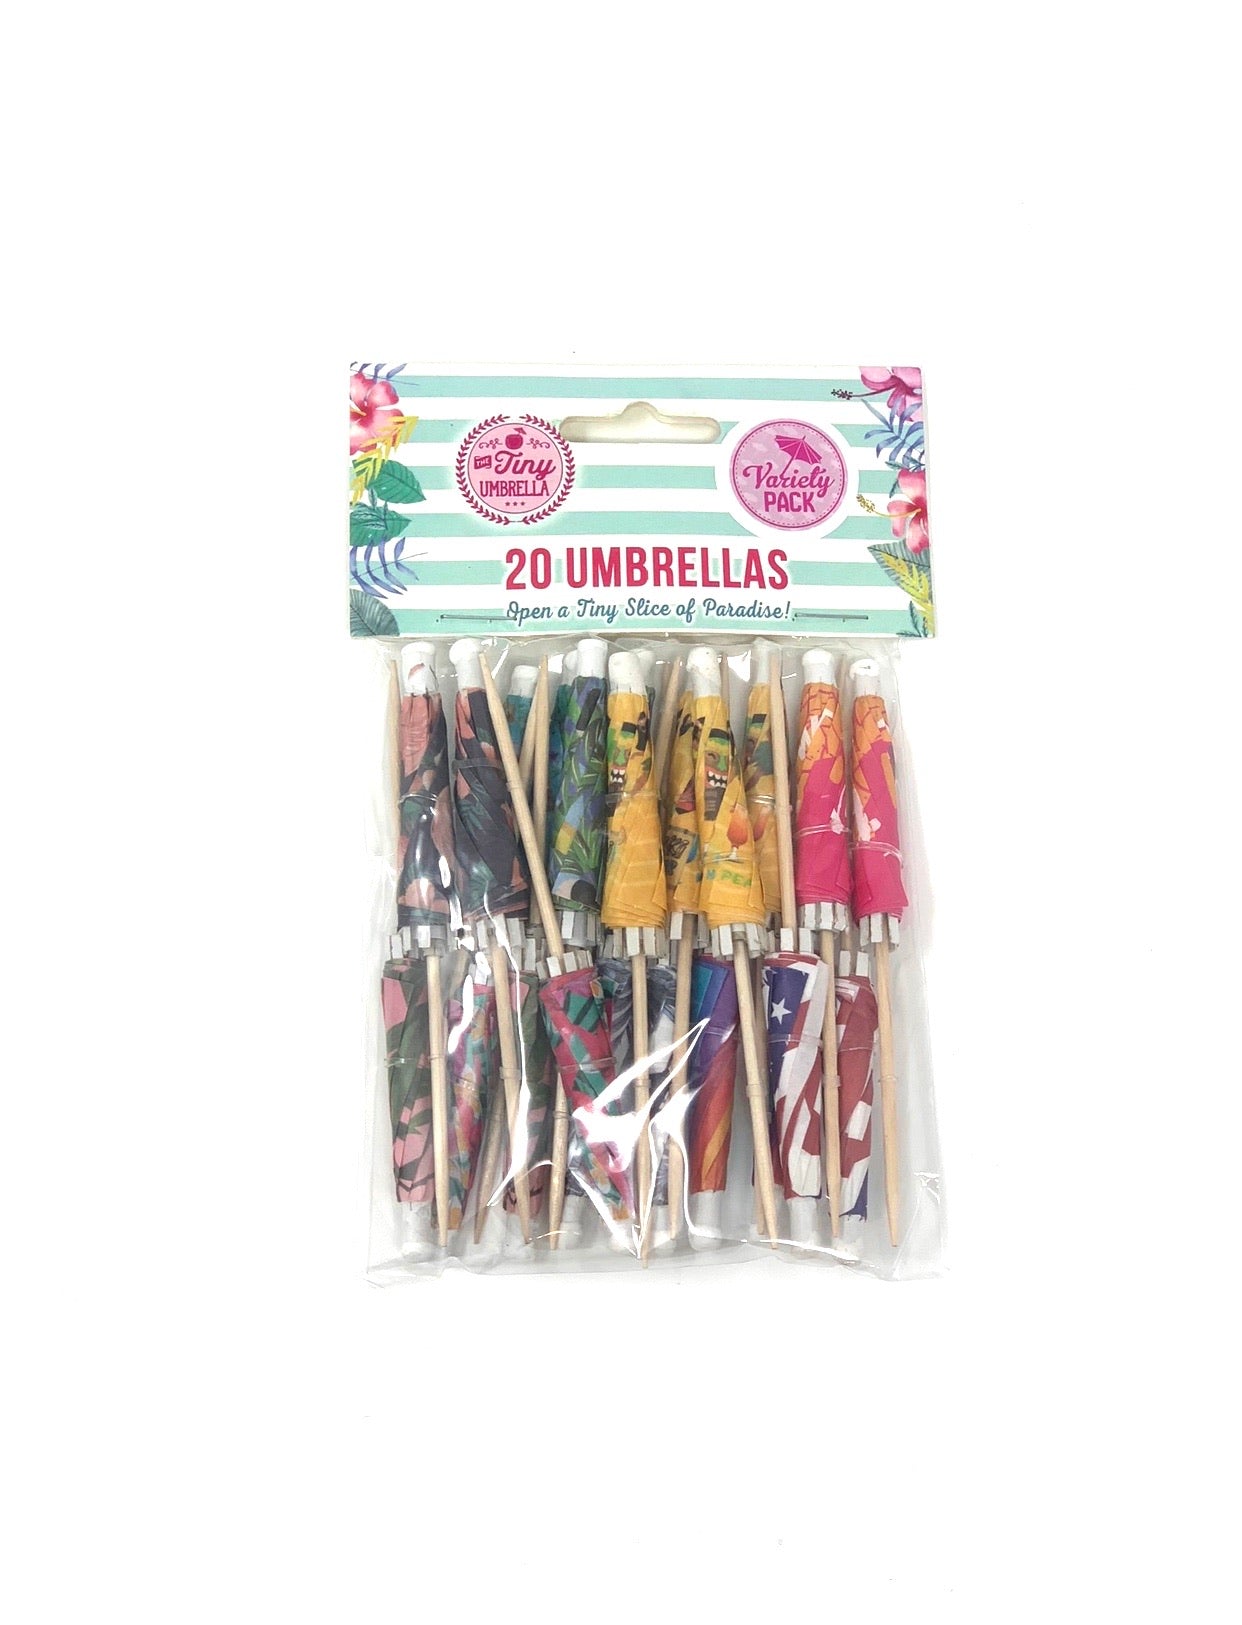 Tiny Umbrella Variety Pack - The Tiny Umbrella